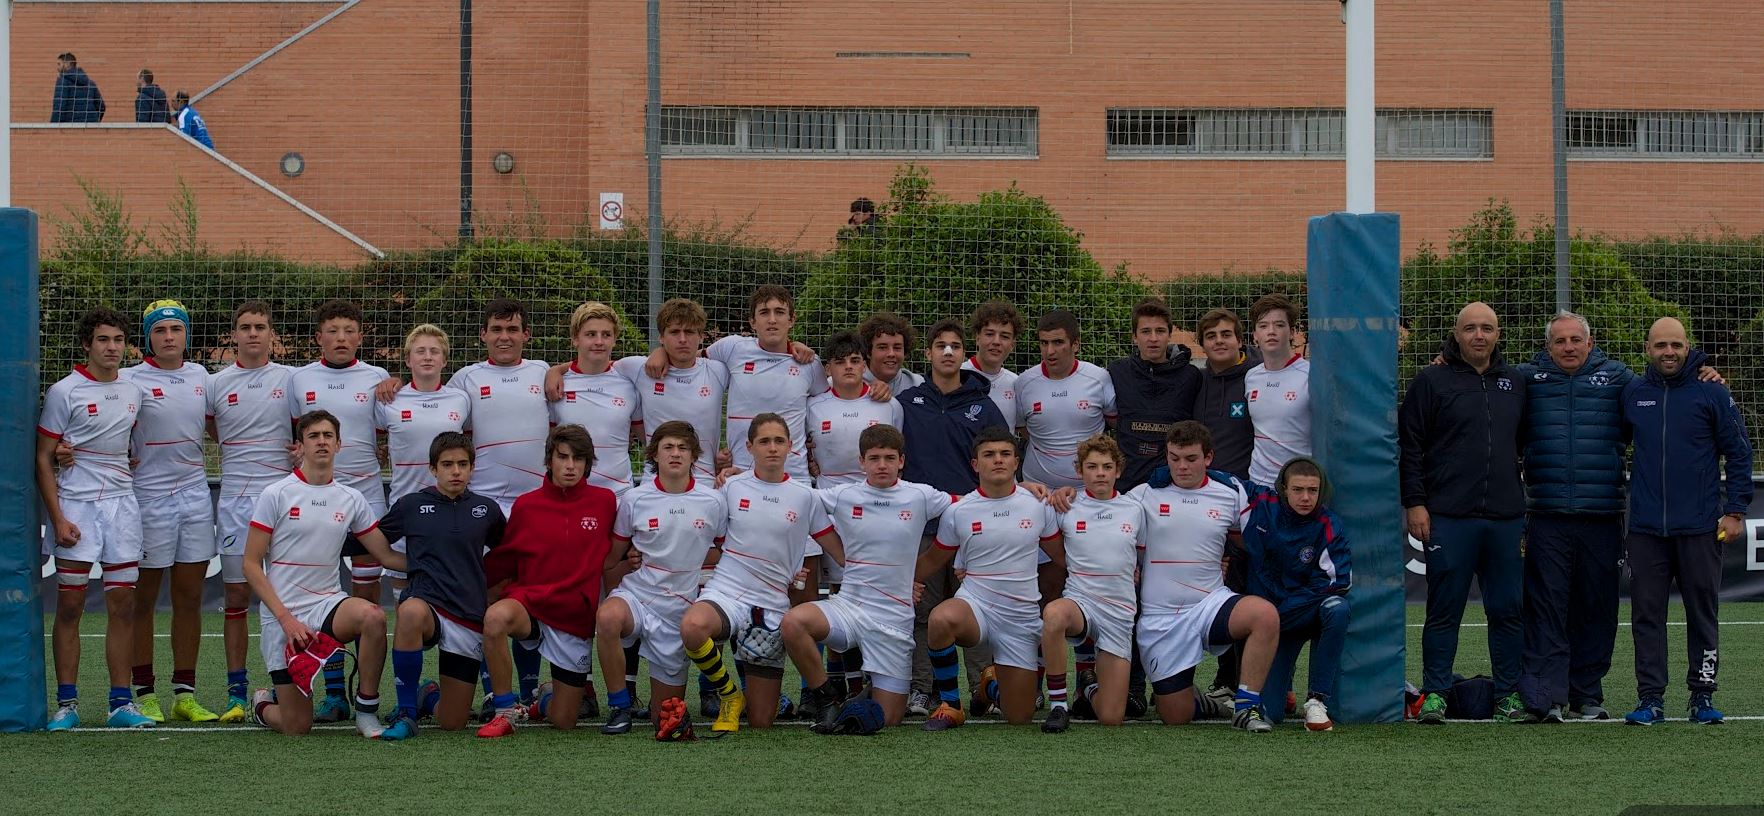 Convocatoria Selección Sub 16 - 21/12/2019 vs Castilla León - Federación Rugby de Madrid